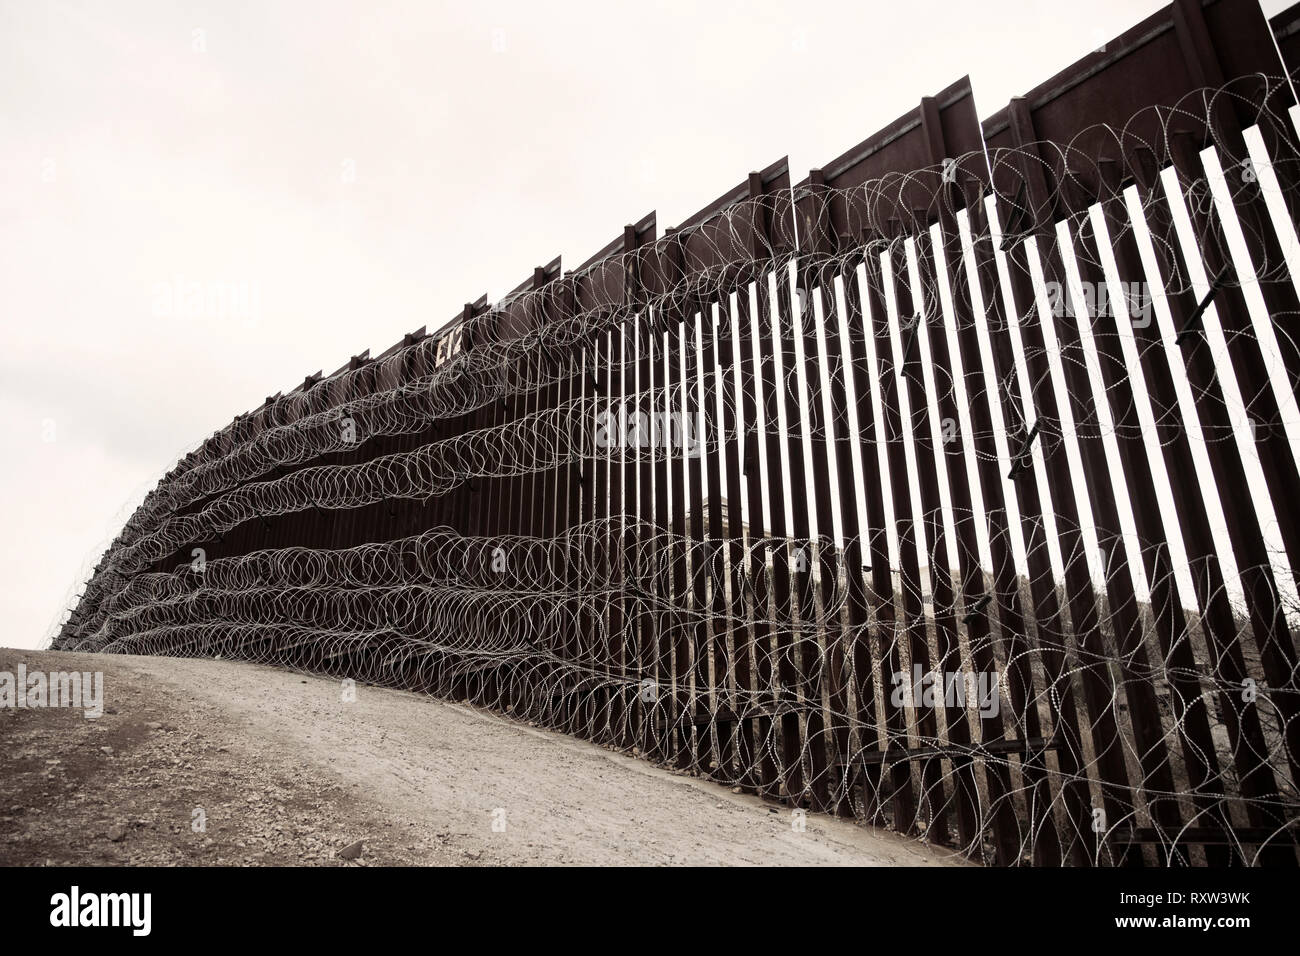 US-Mexiko internationale Grenze: Schichten der Ziehharmonika zu bestehenden Barriere Infrastruktur entlang der US-mexikanischen Grenze in der Nähe von Nogales, AZ, am 4. Februar 2019 aufgenommen. Weitere Informationen finden Sie unten. Stockfoto